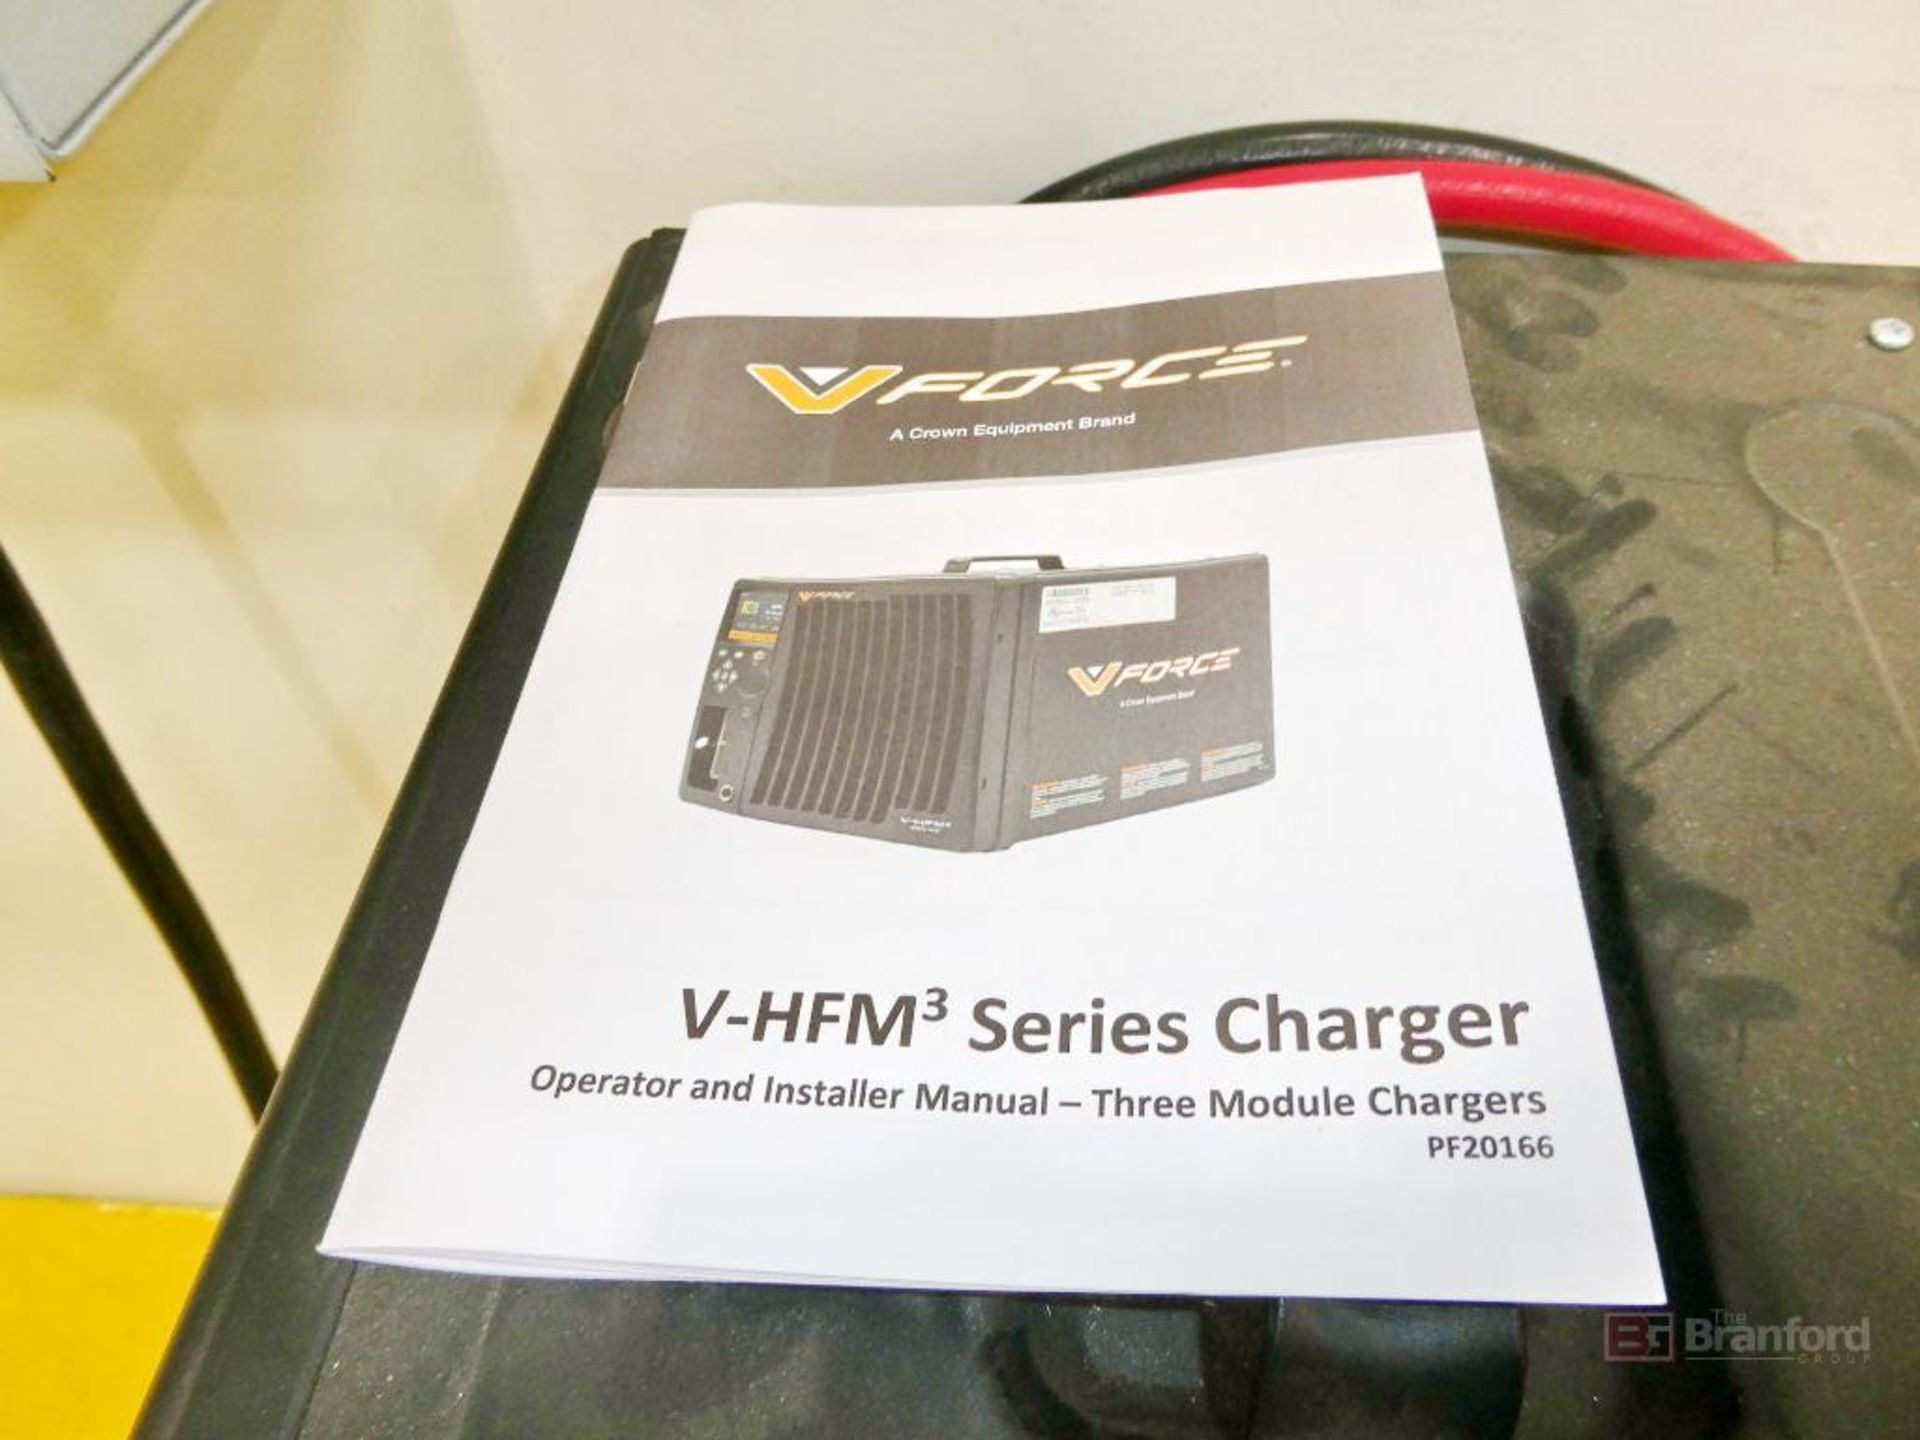 V-Force Model FS3-MP344-3, Forklift Multi-Voltage Battery Charger - Image 5 of 6